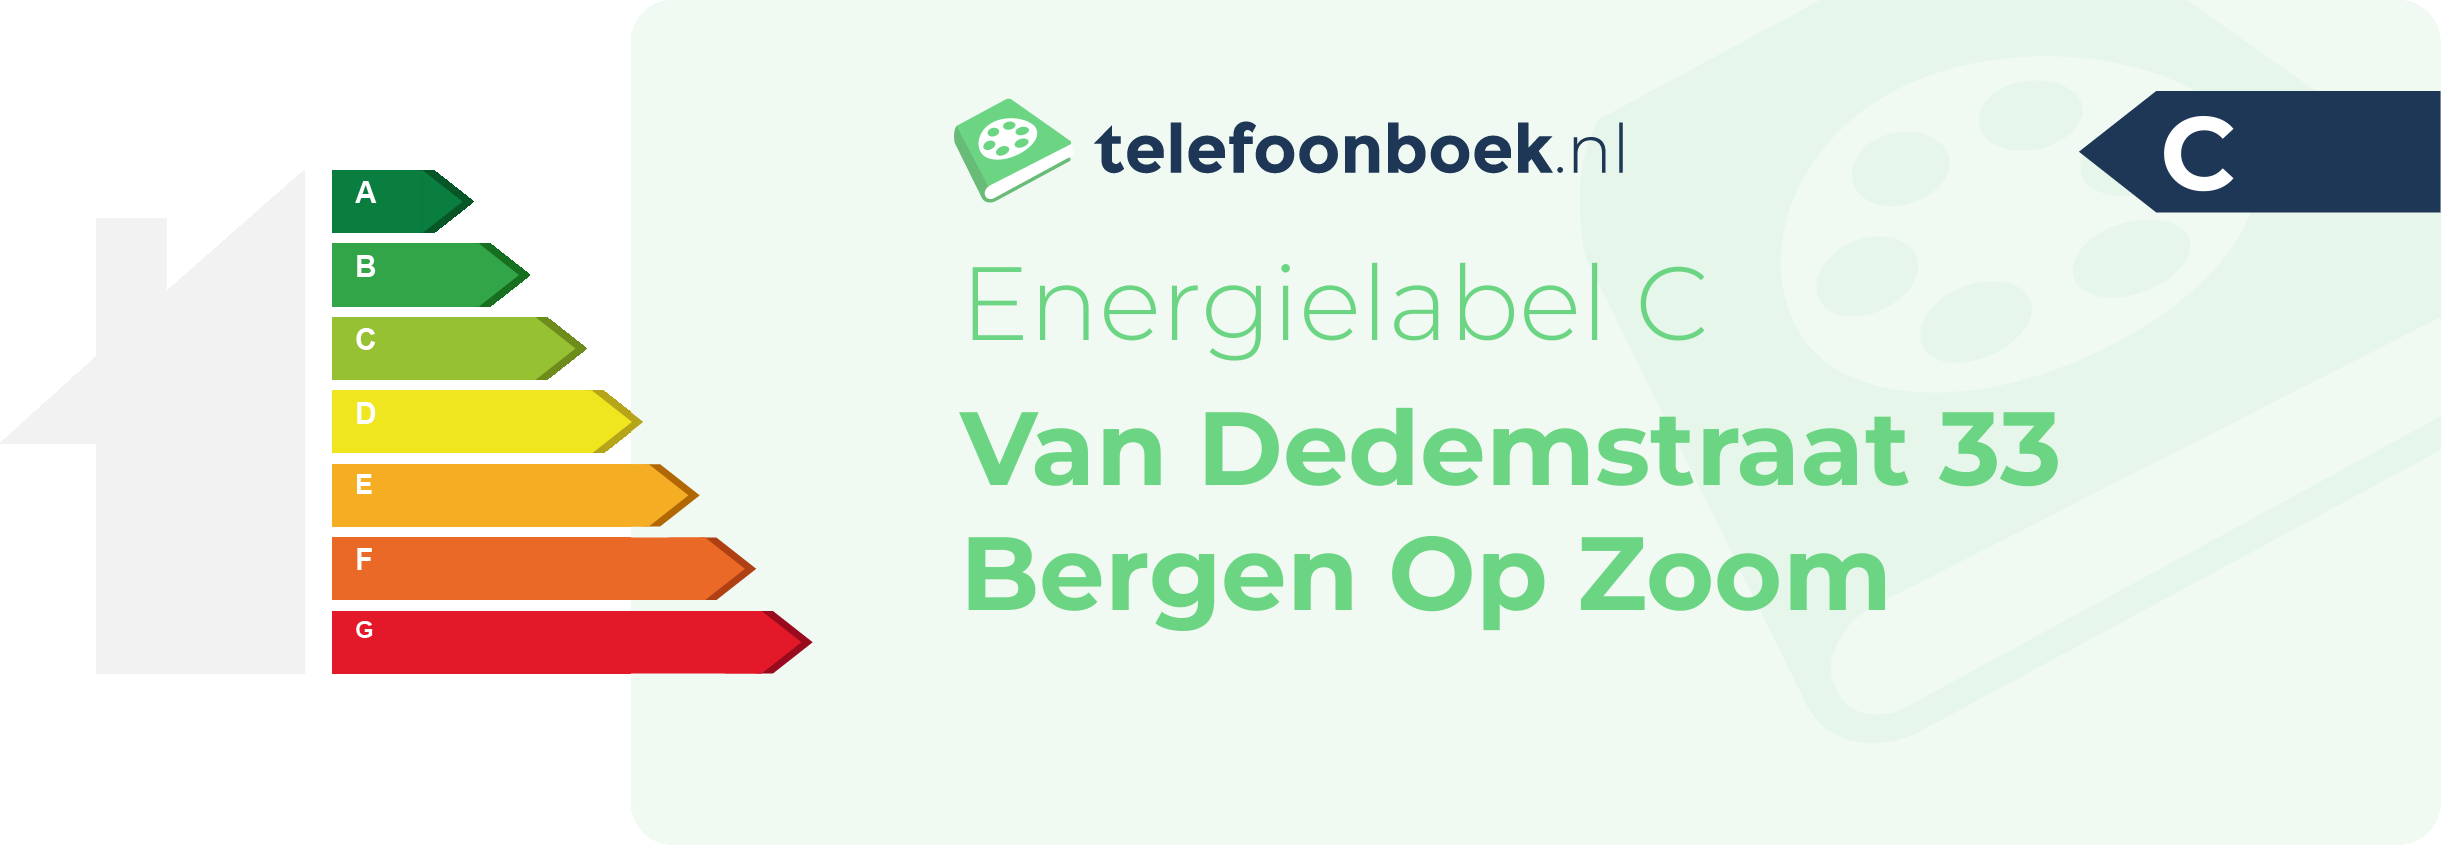 Energielabel Van Dedemstraat 33 Bergen Op Zoom